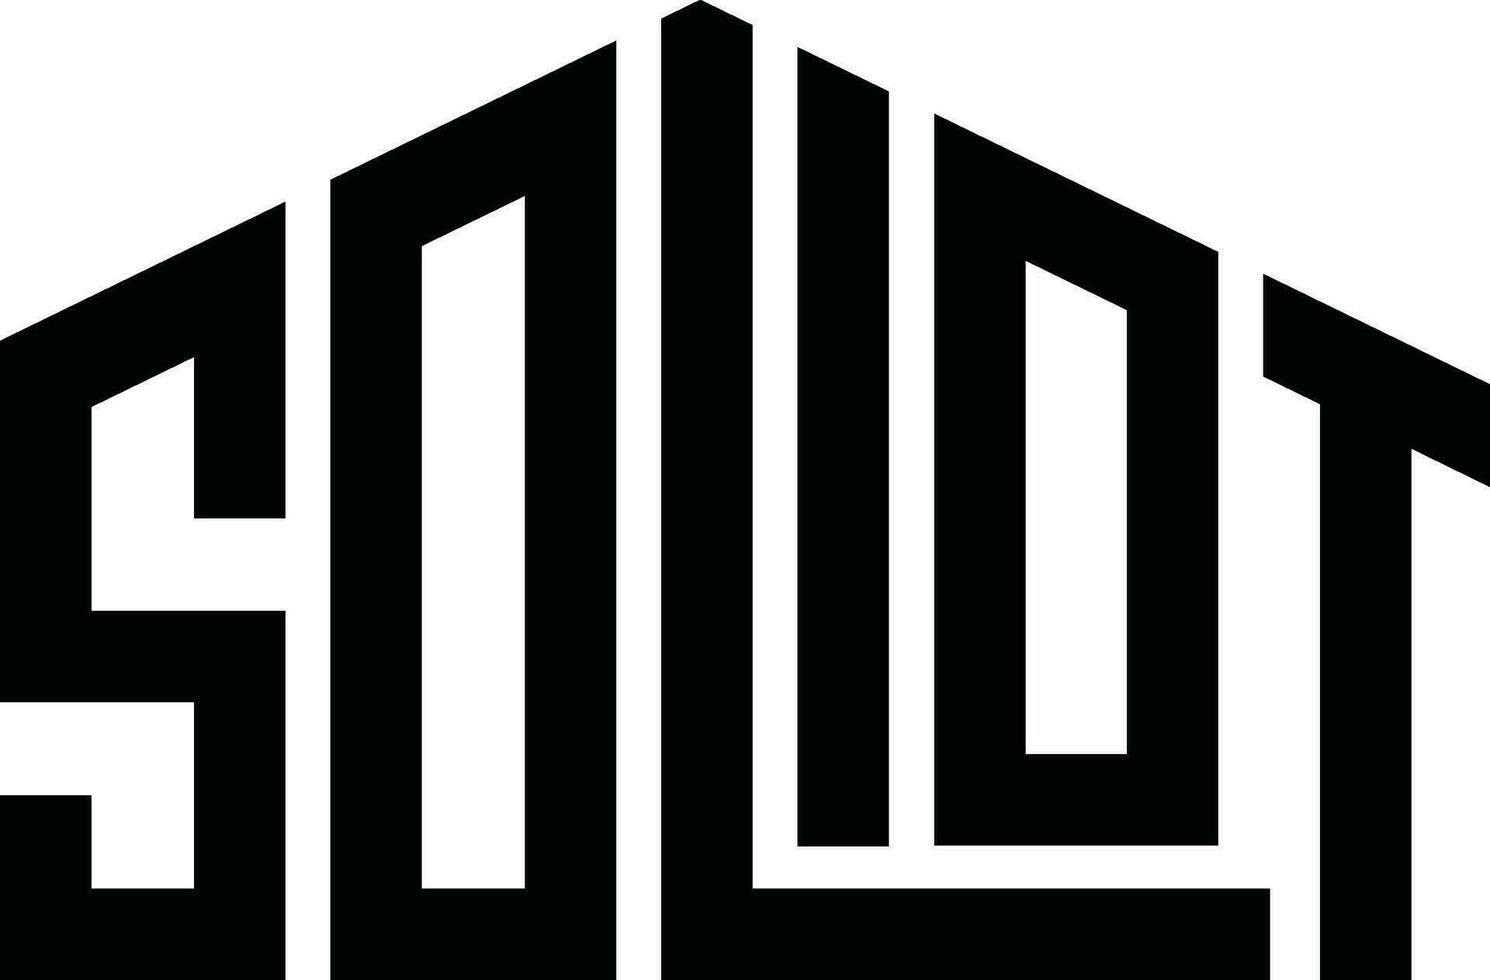 Facile minimal logo conception pour votre marque vecteur